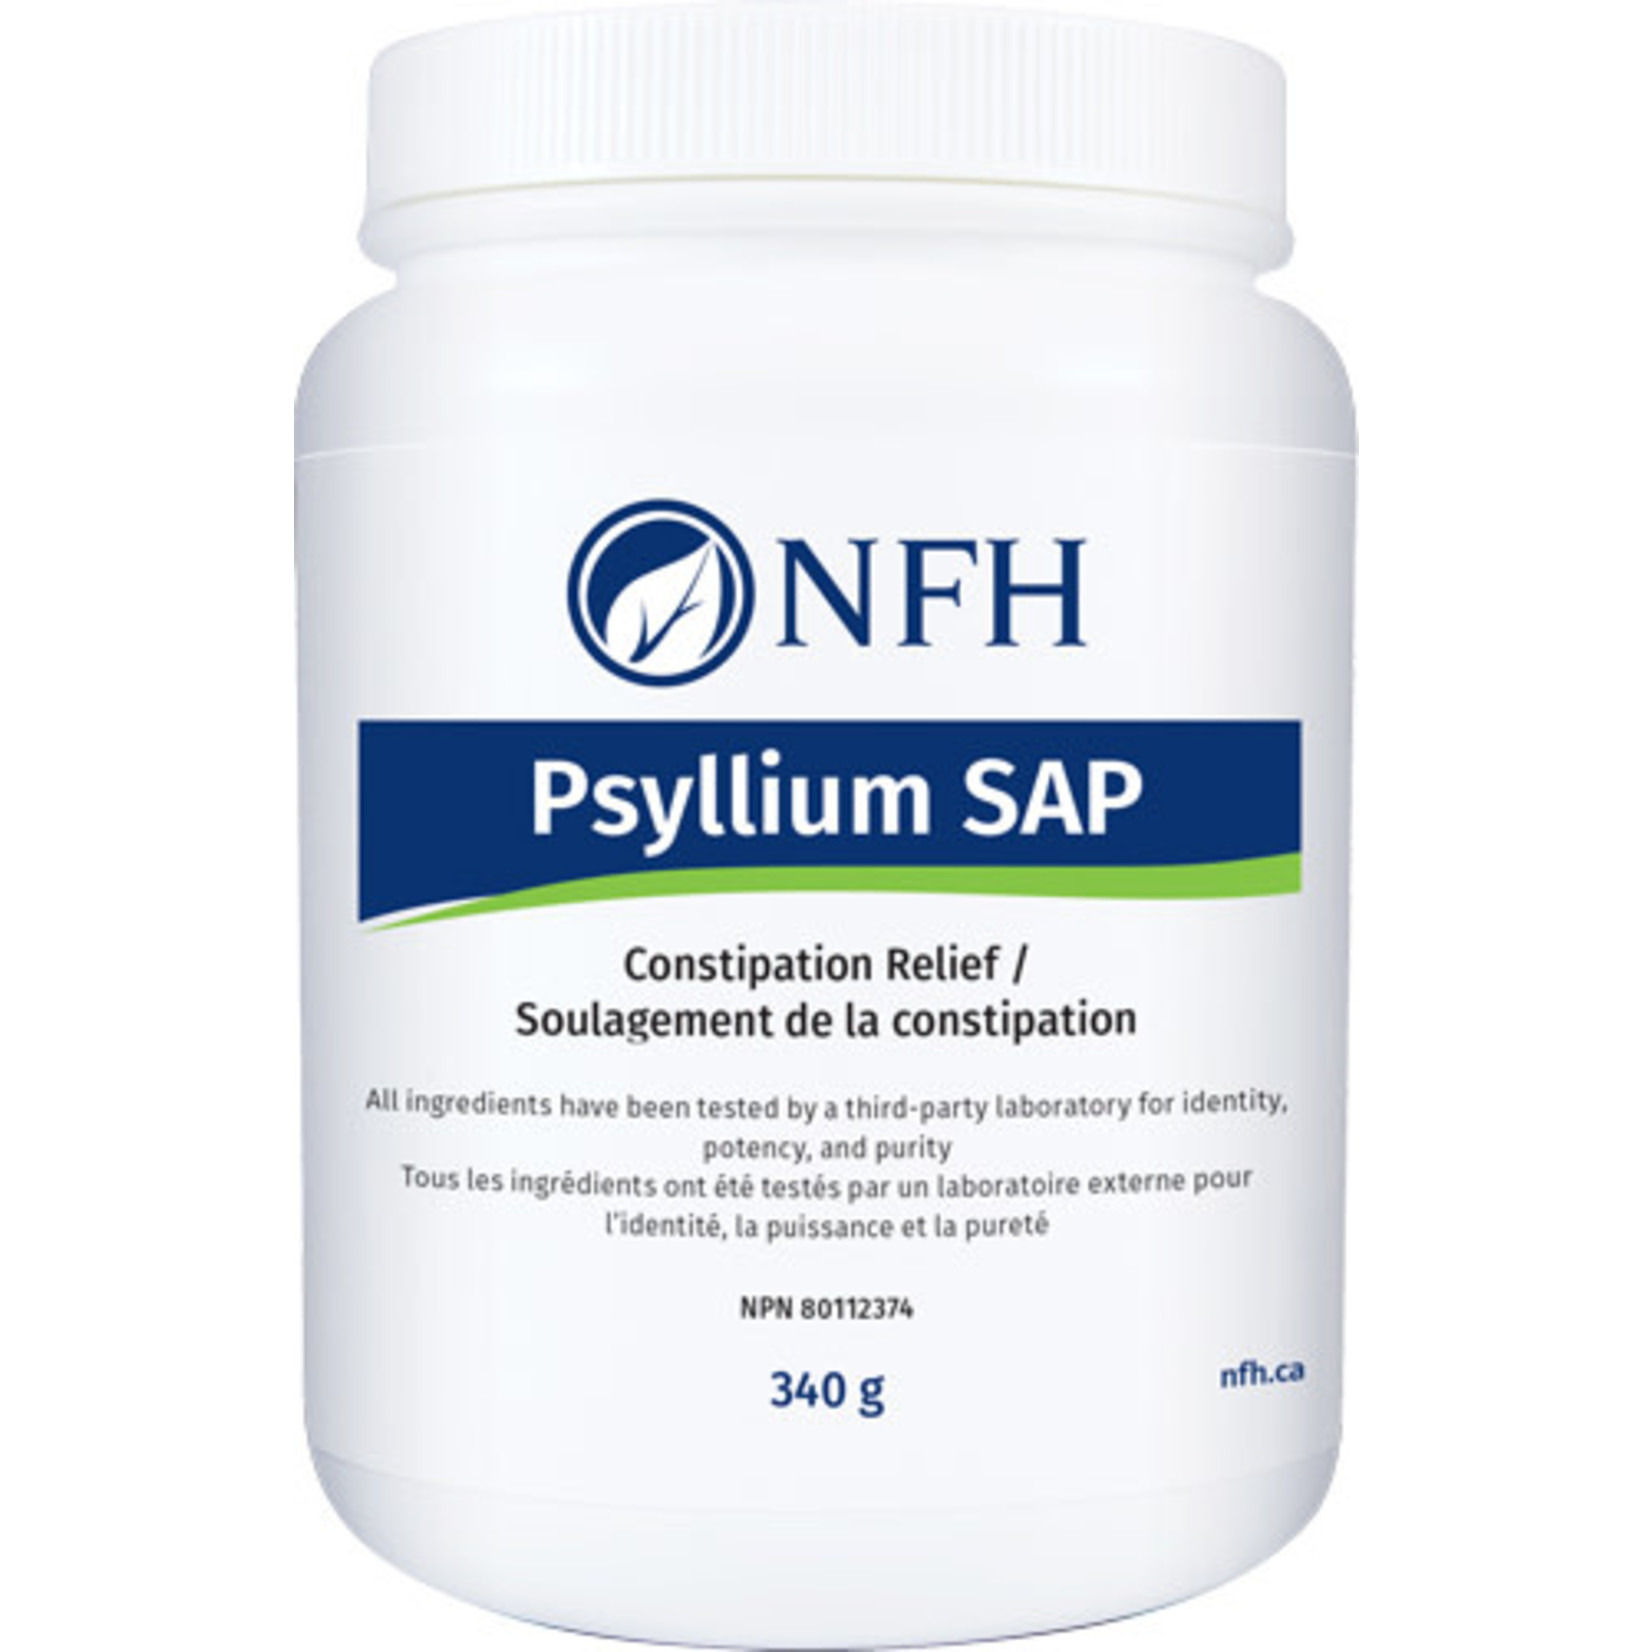 NFH NFH PSYLLIUM SAP 340G